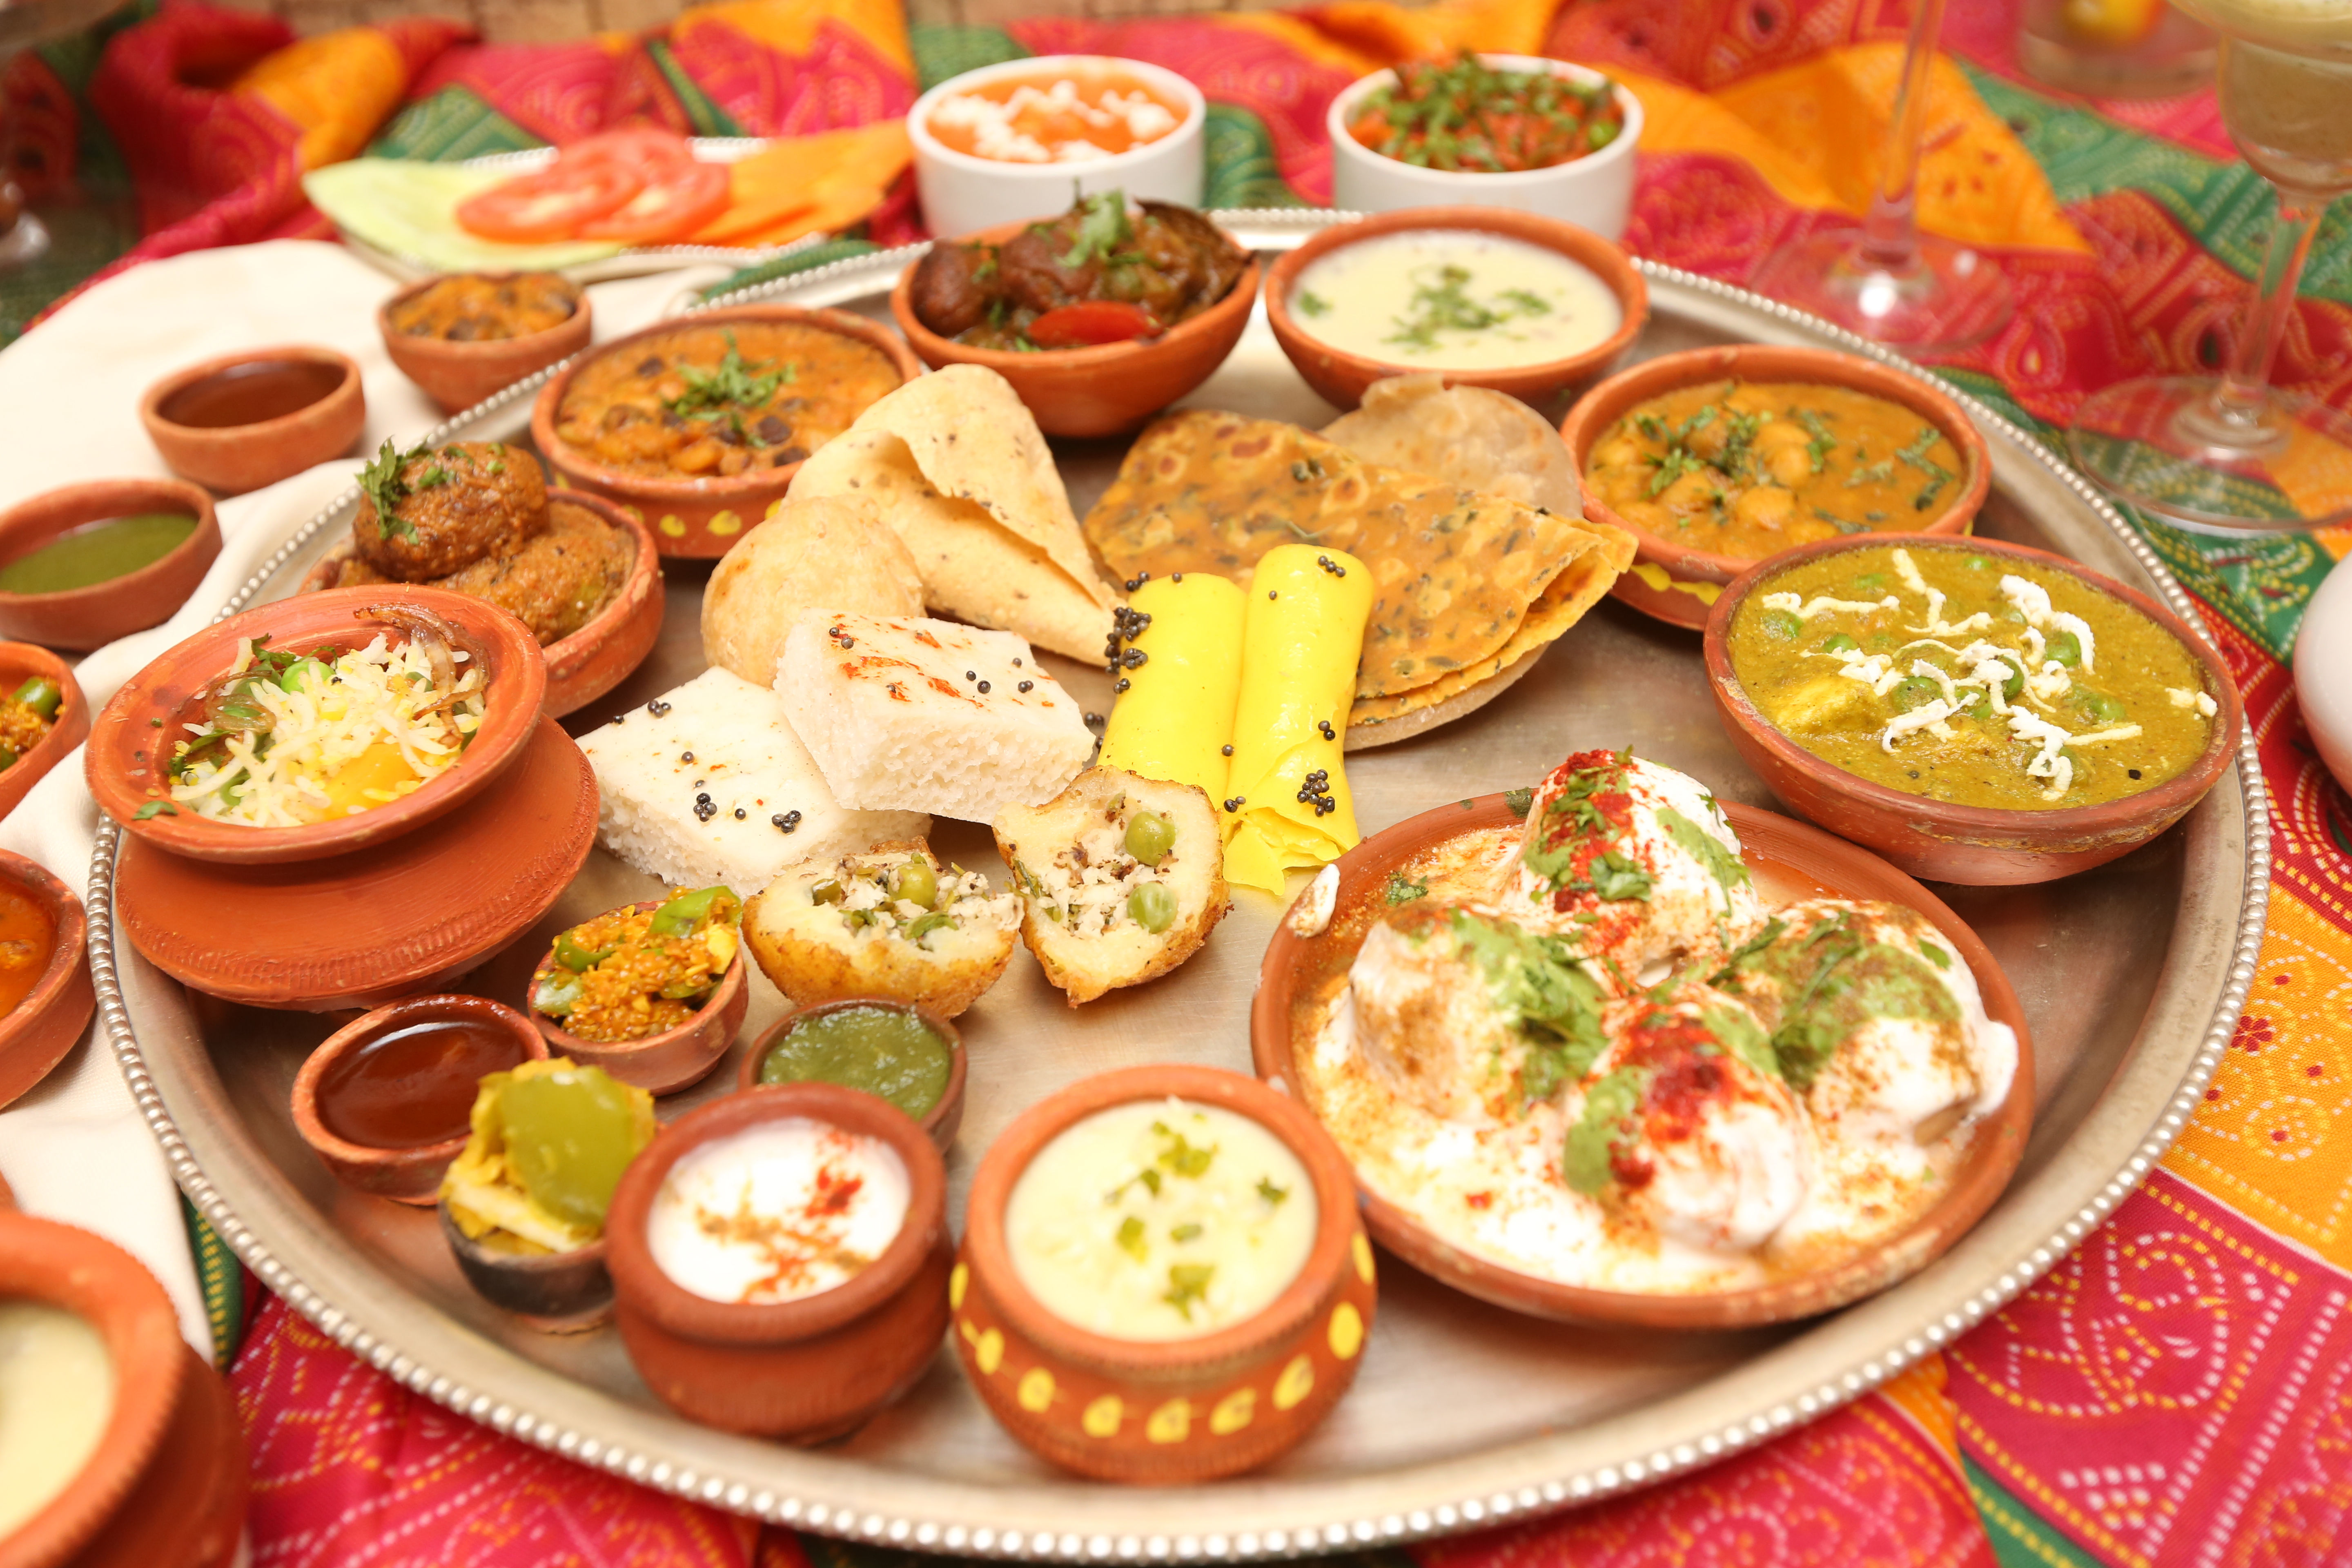 The Spread at Aapnu Gujarati’ – a Gujarati food festival at Spice Ocean, on till July 3.